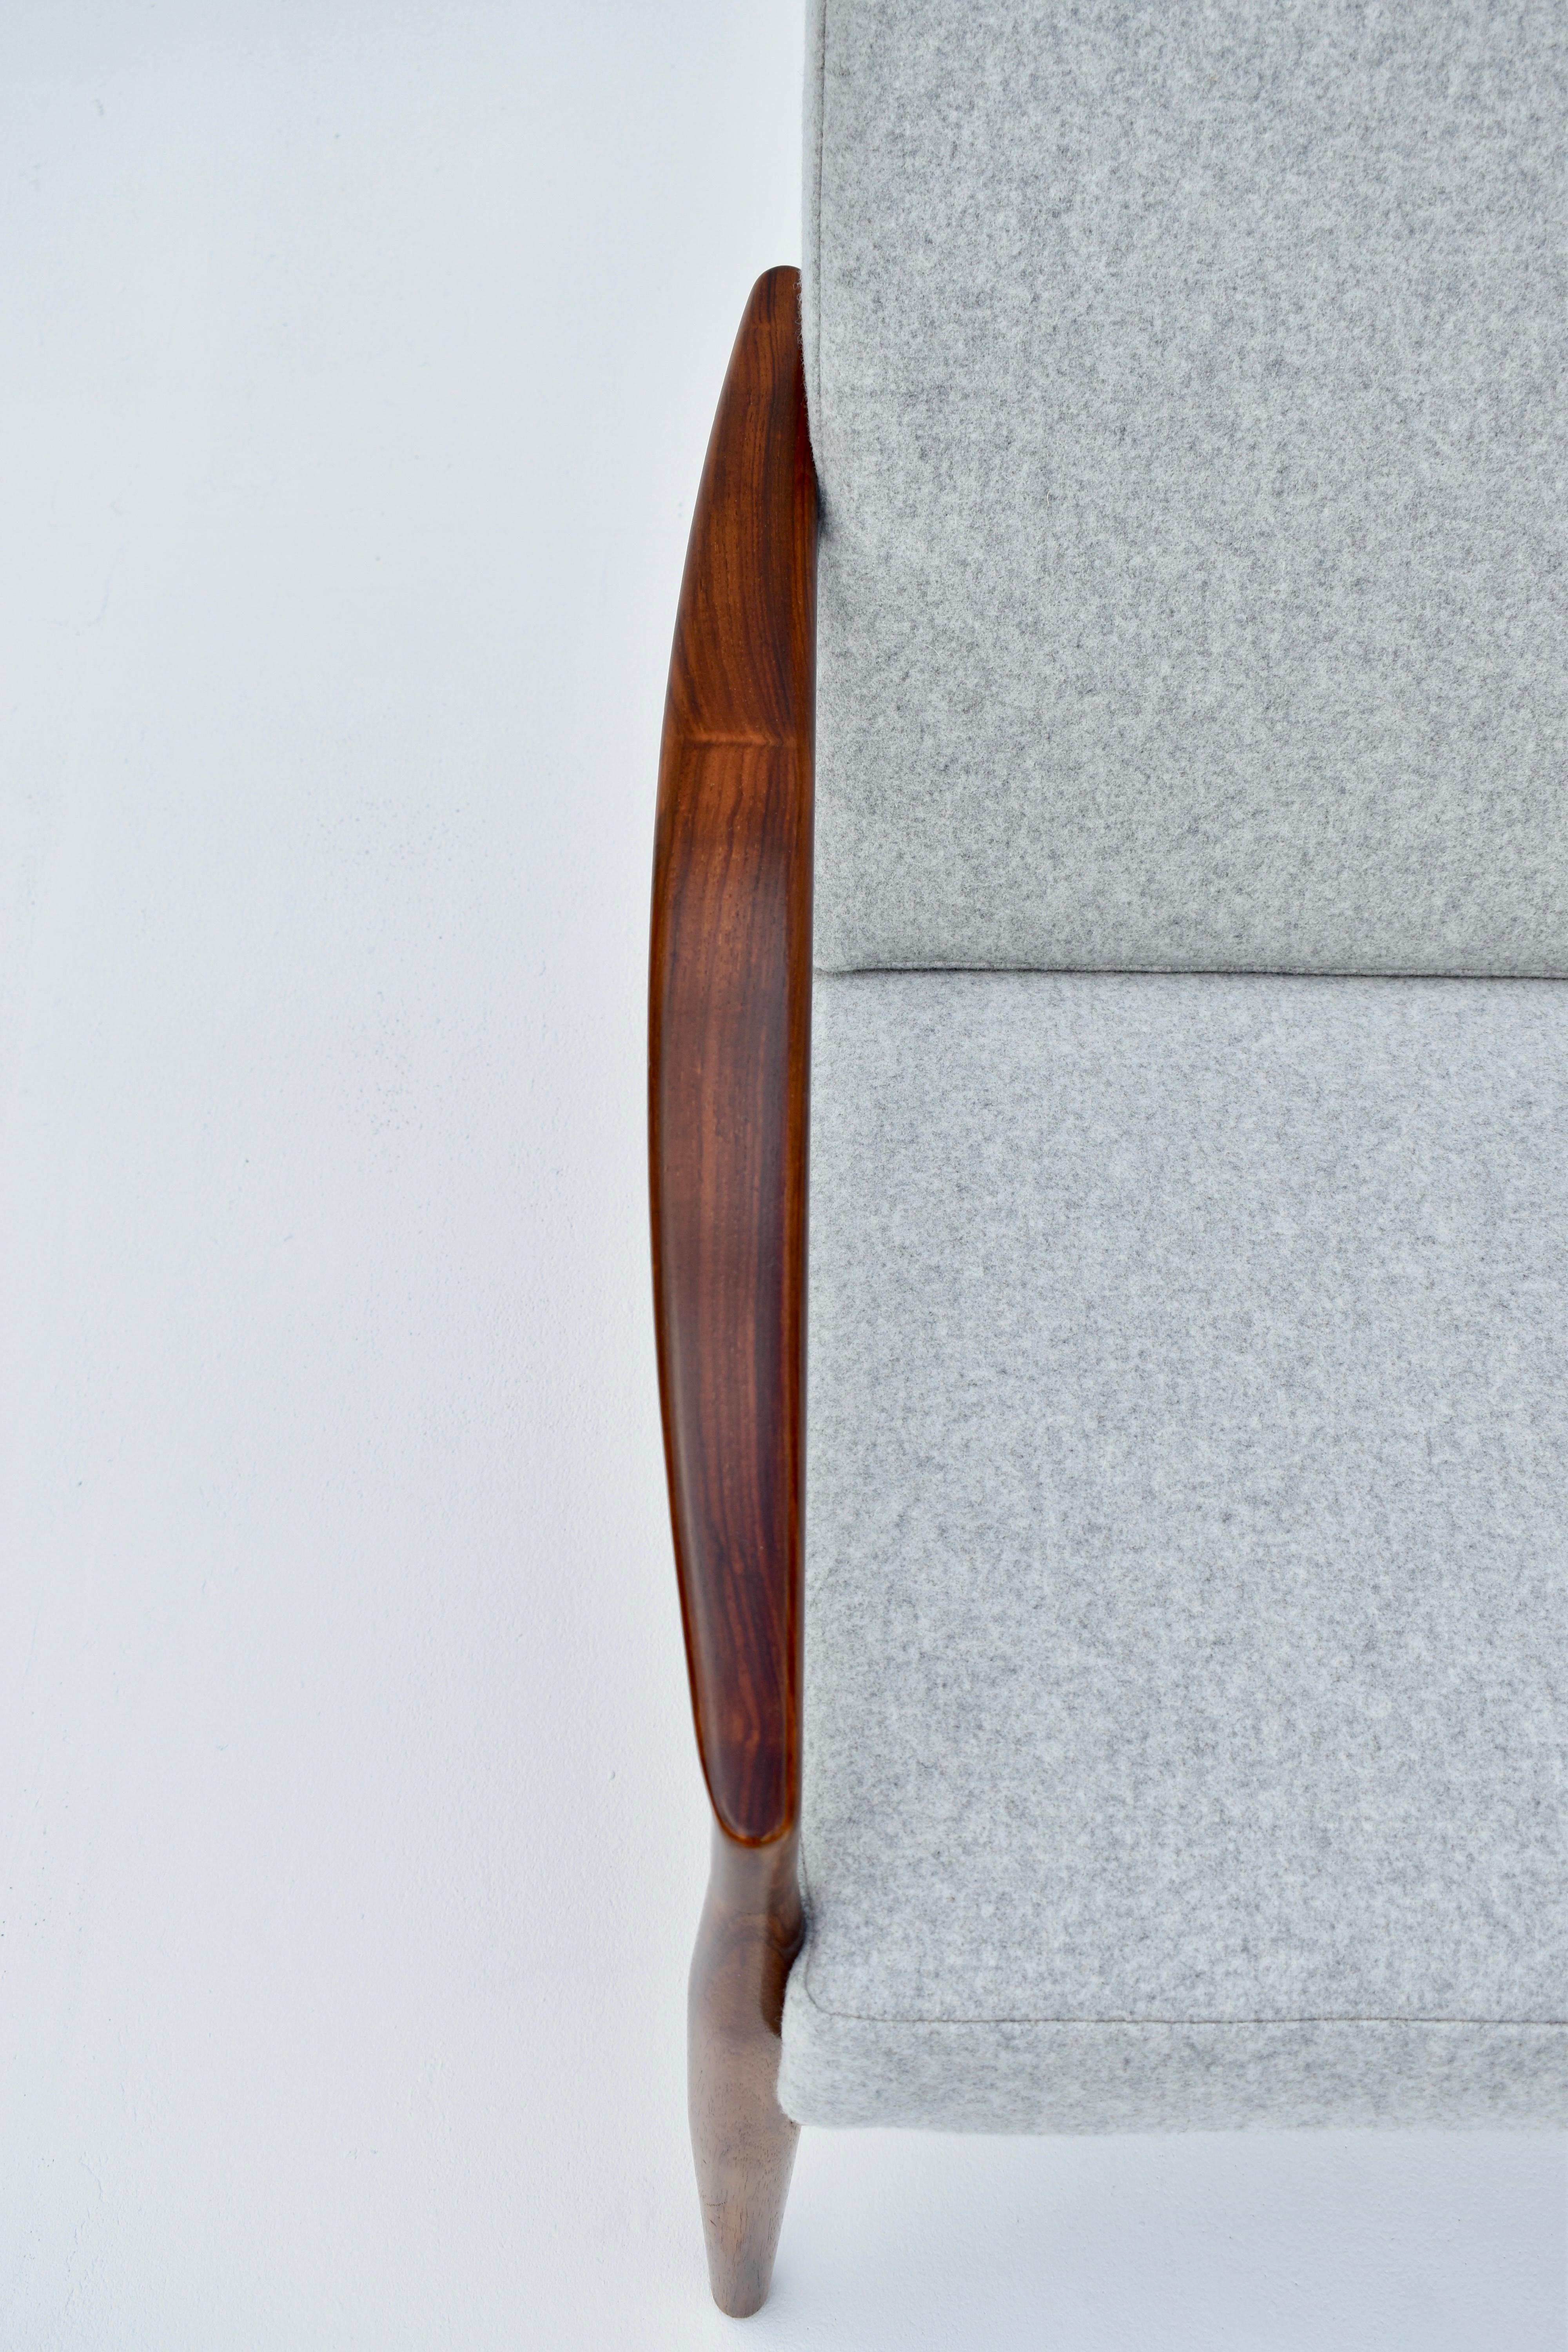 Kai Kristiansen Model 121 'Paperknife' Chair in Rosewood For Magnus Olesen 7